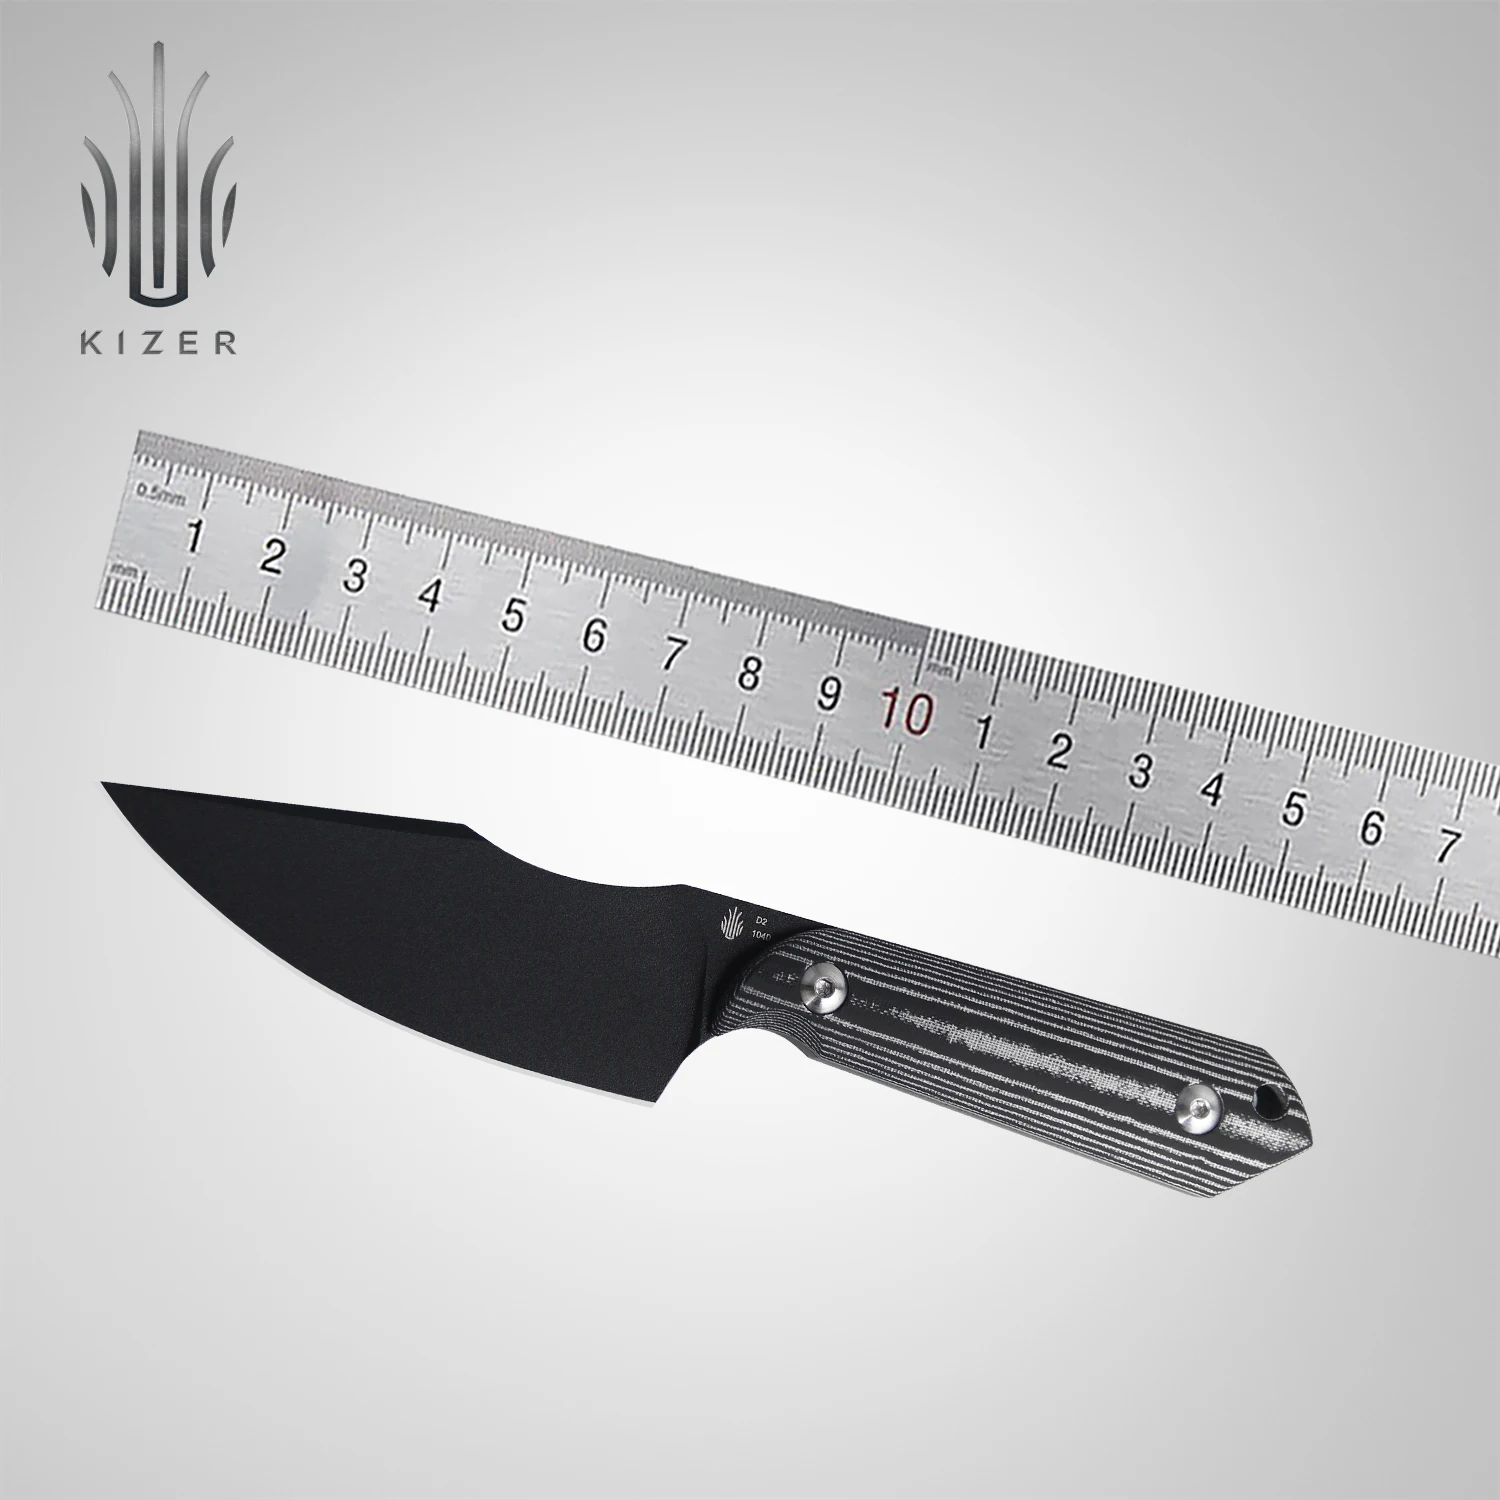 Kizer קבוע להב הסכין 1040 צלצל D2 פלדה עם כסף Micarta להתמודד עם הישרדות חיצונית EDC סכינים, כלי ציד - 0